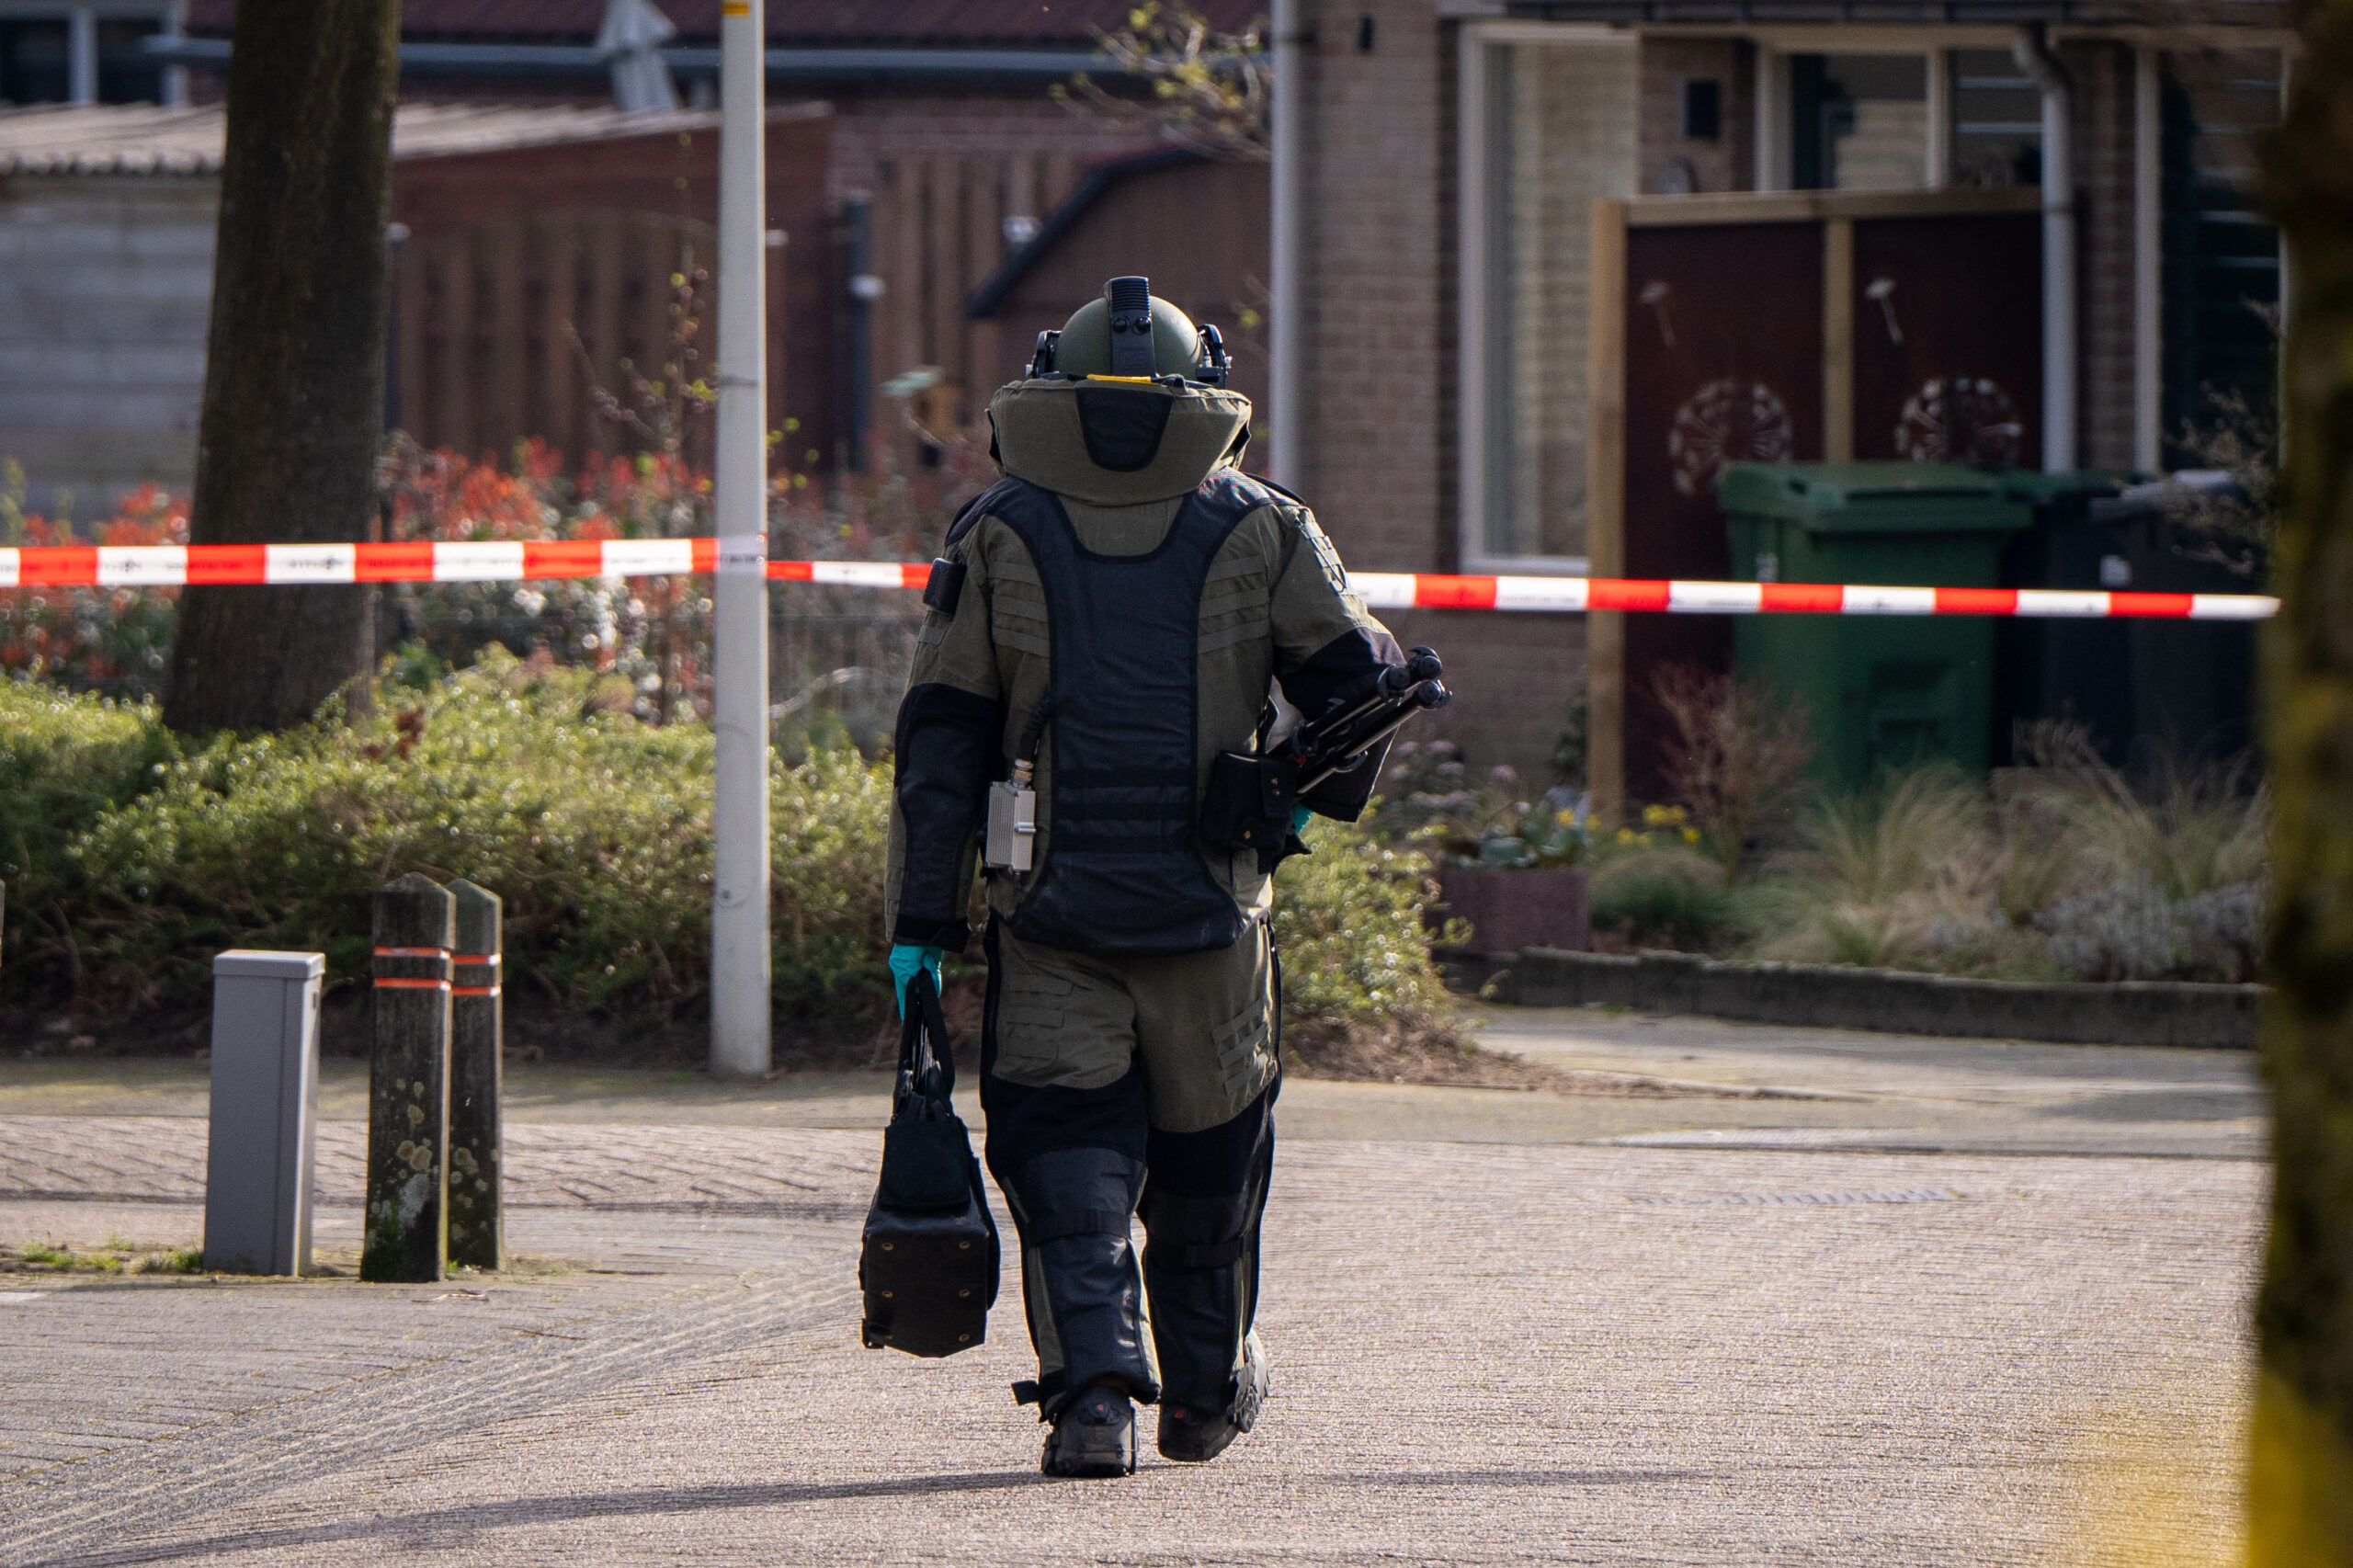 Politie waarschuwt voor zelfgemaakte explosieven op straat